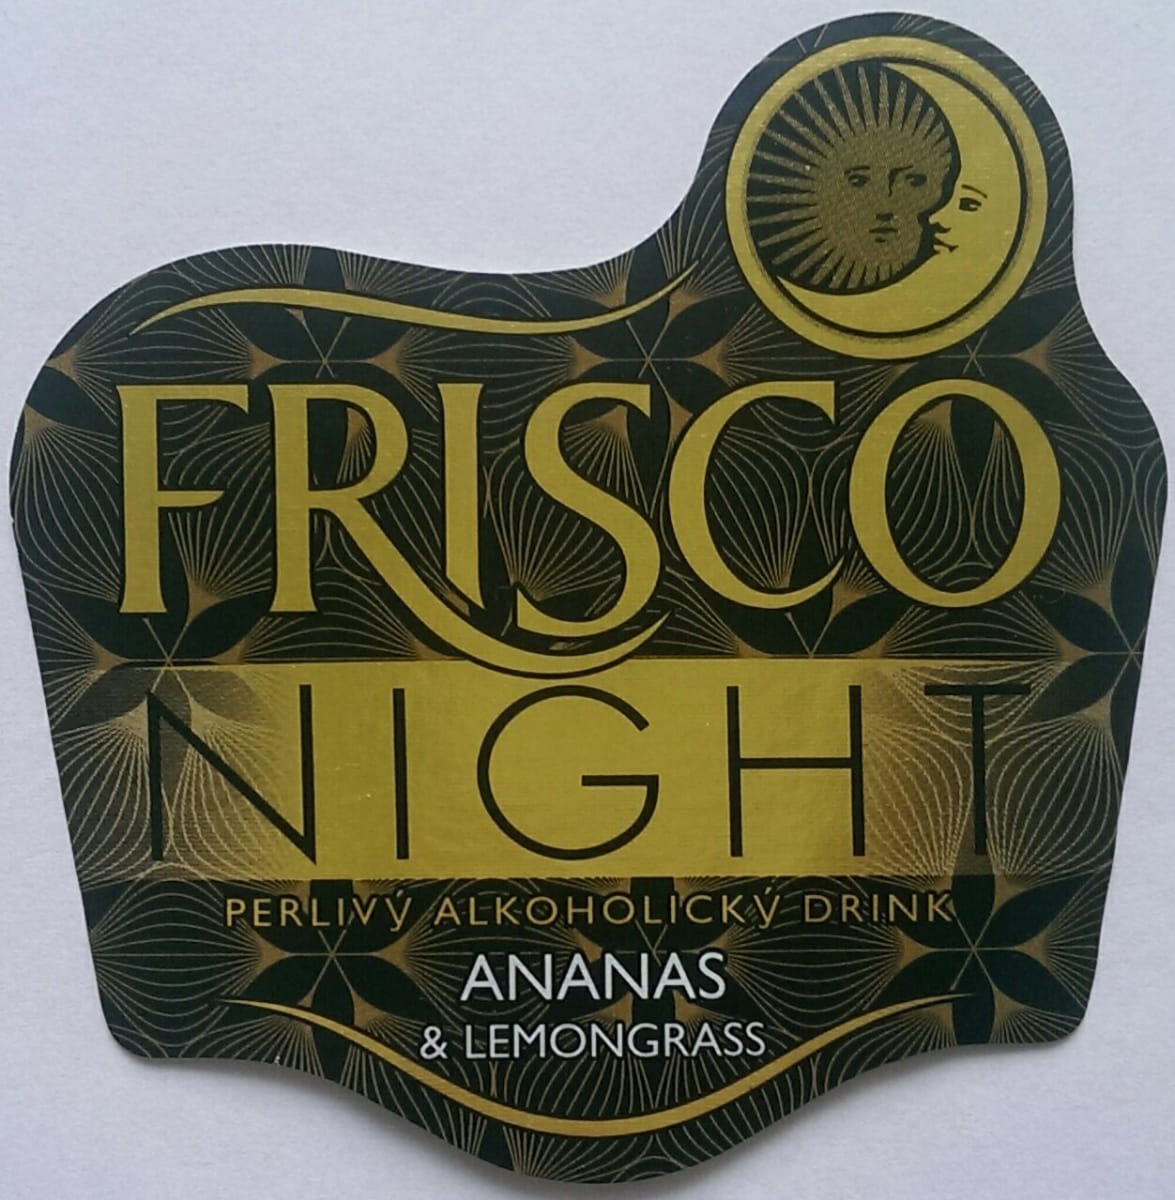 Frisco Night Ananas a Citrónová tráva